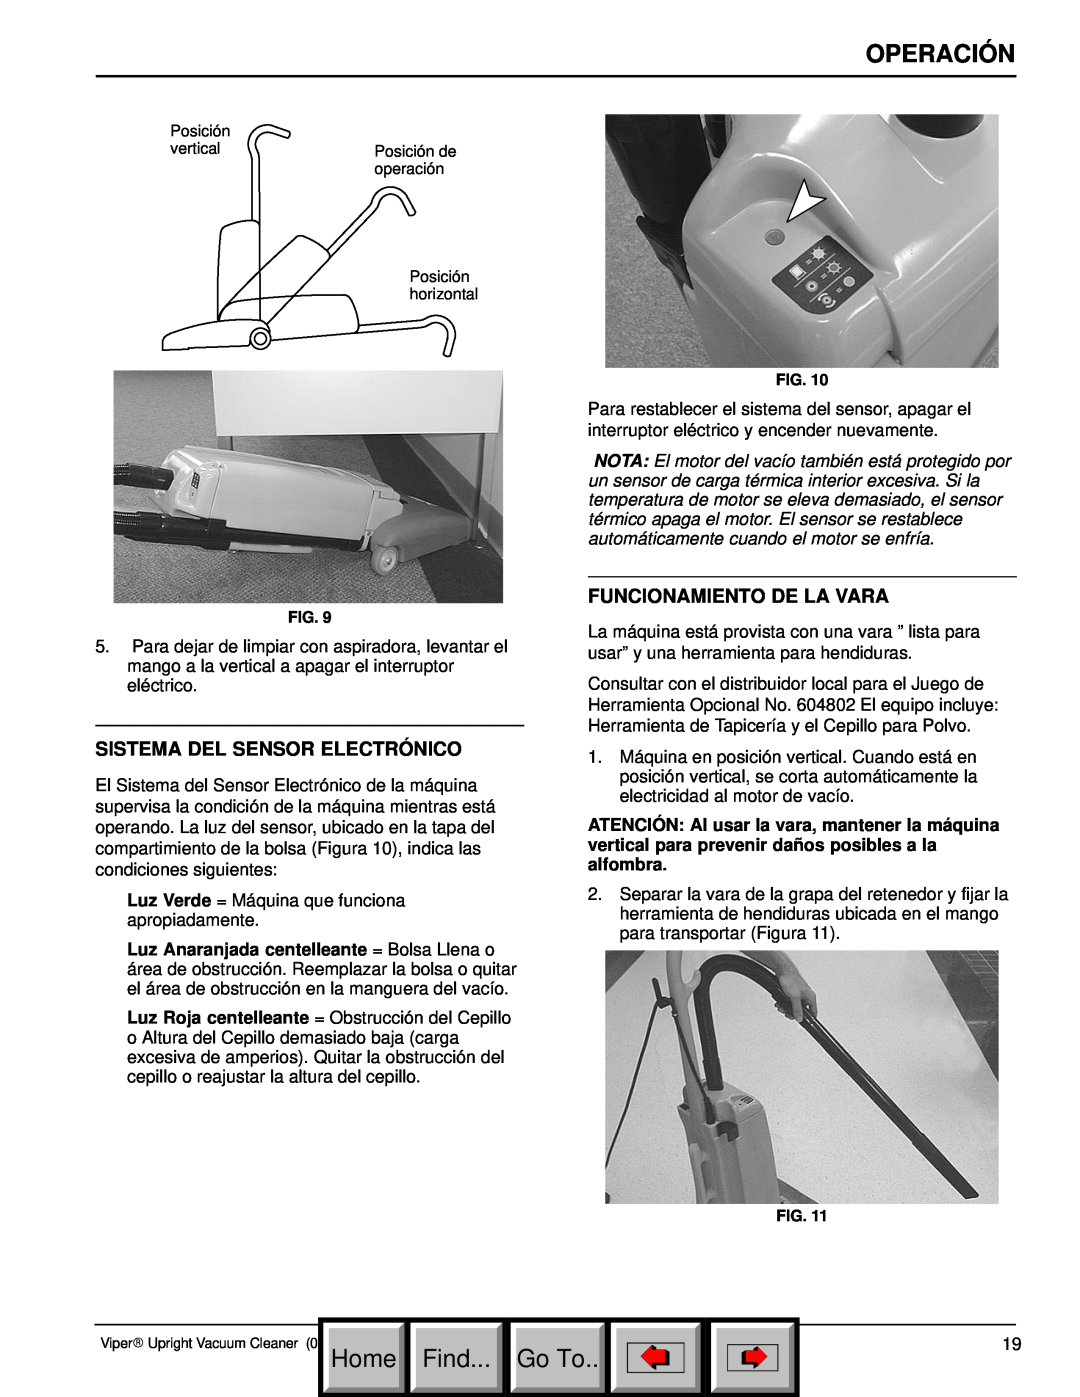 Philips 608669 manual Sistema Del Sensor Electrónico, Funcionamiento De La Vara, Operación, Home Find, Go To 